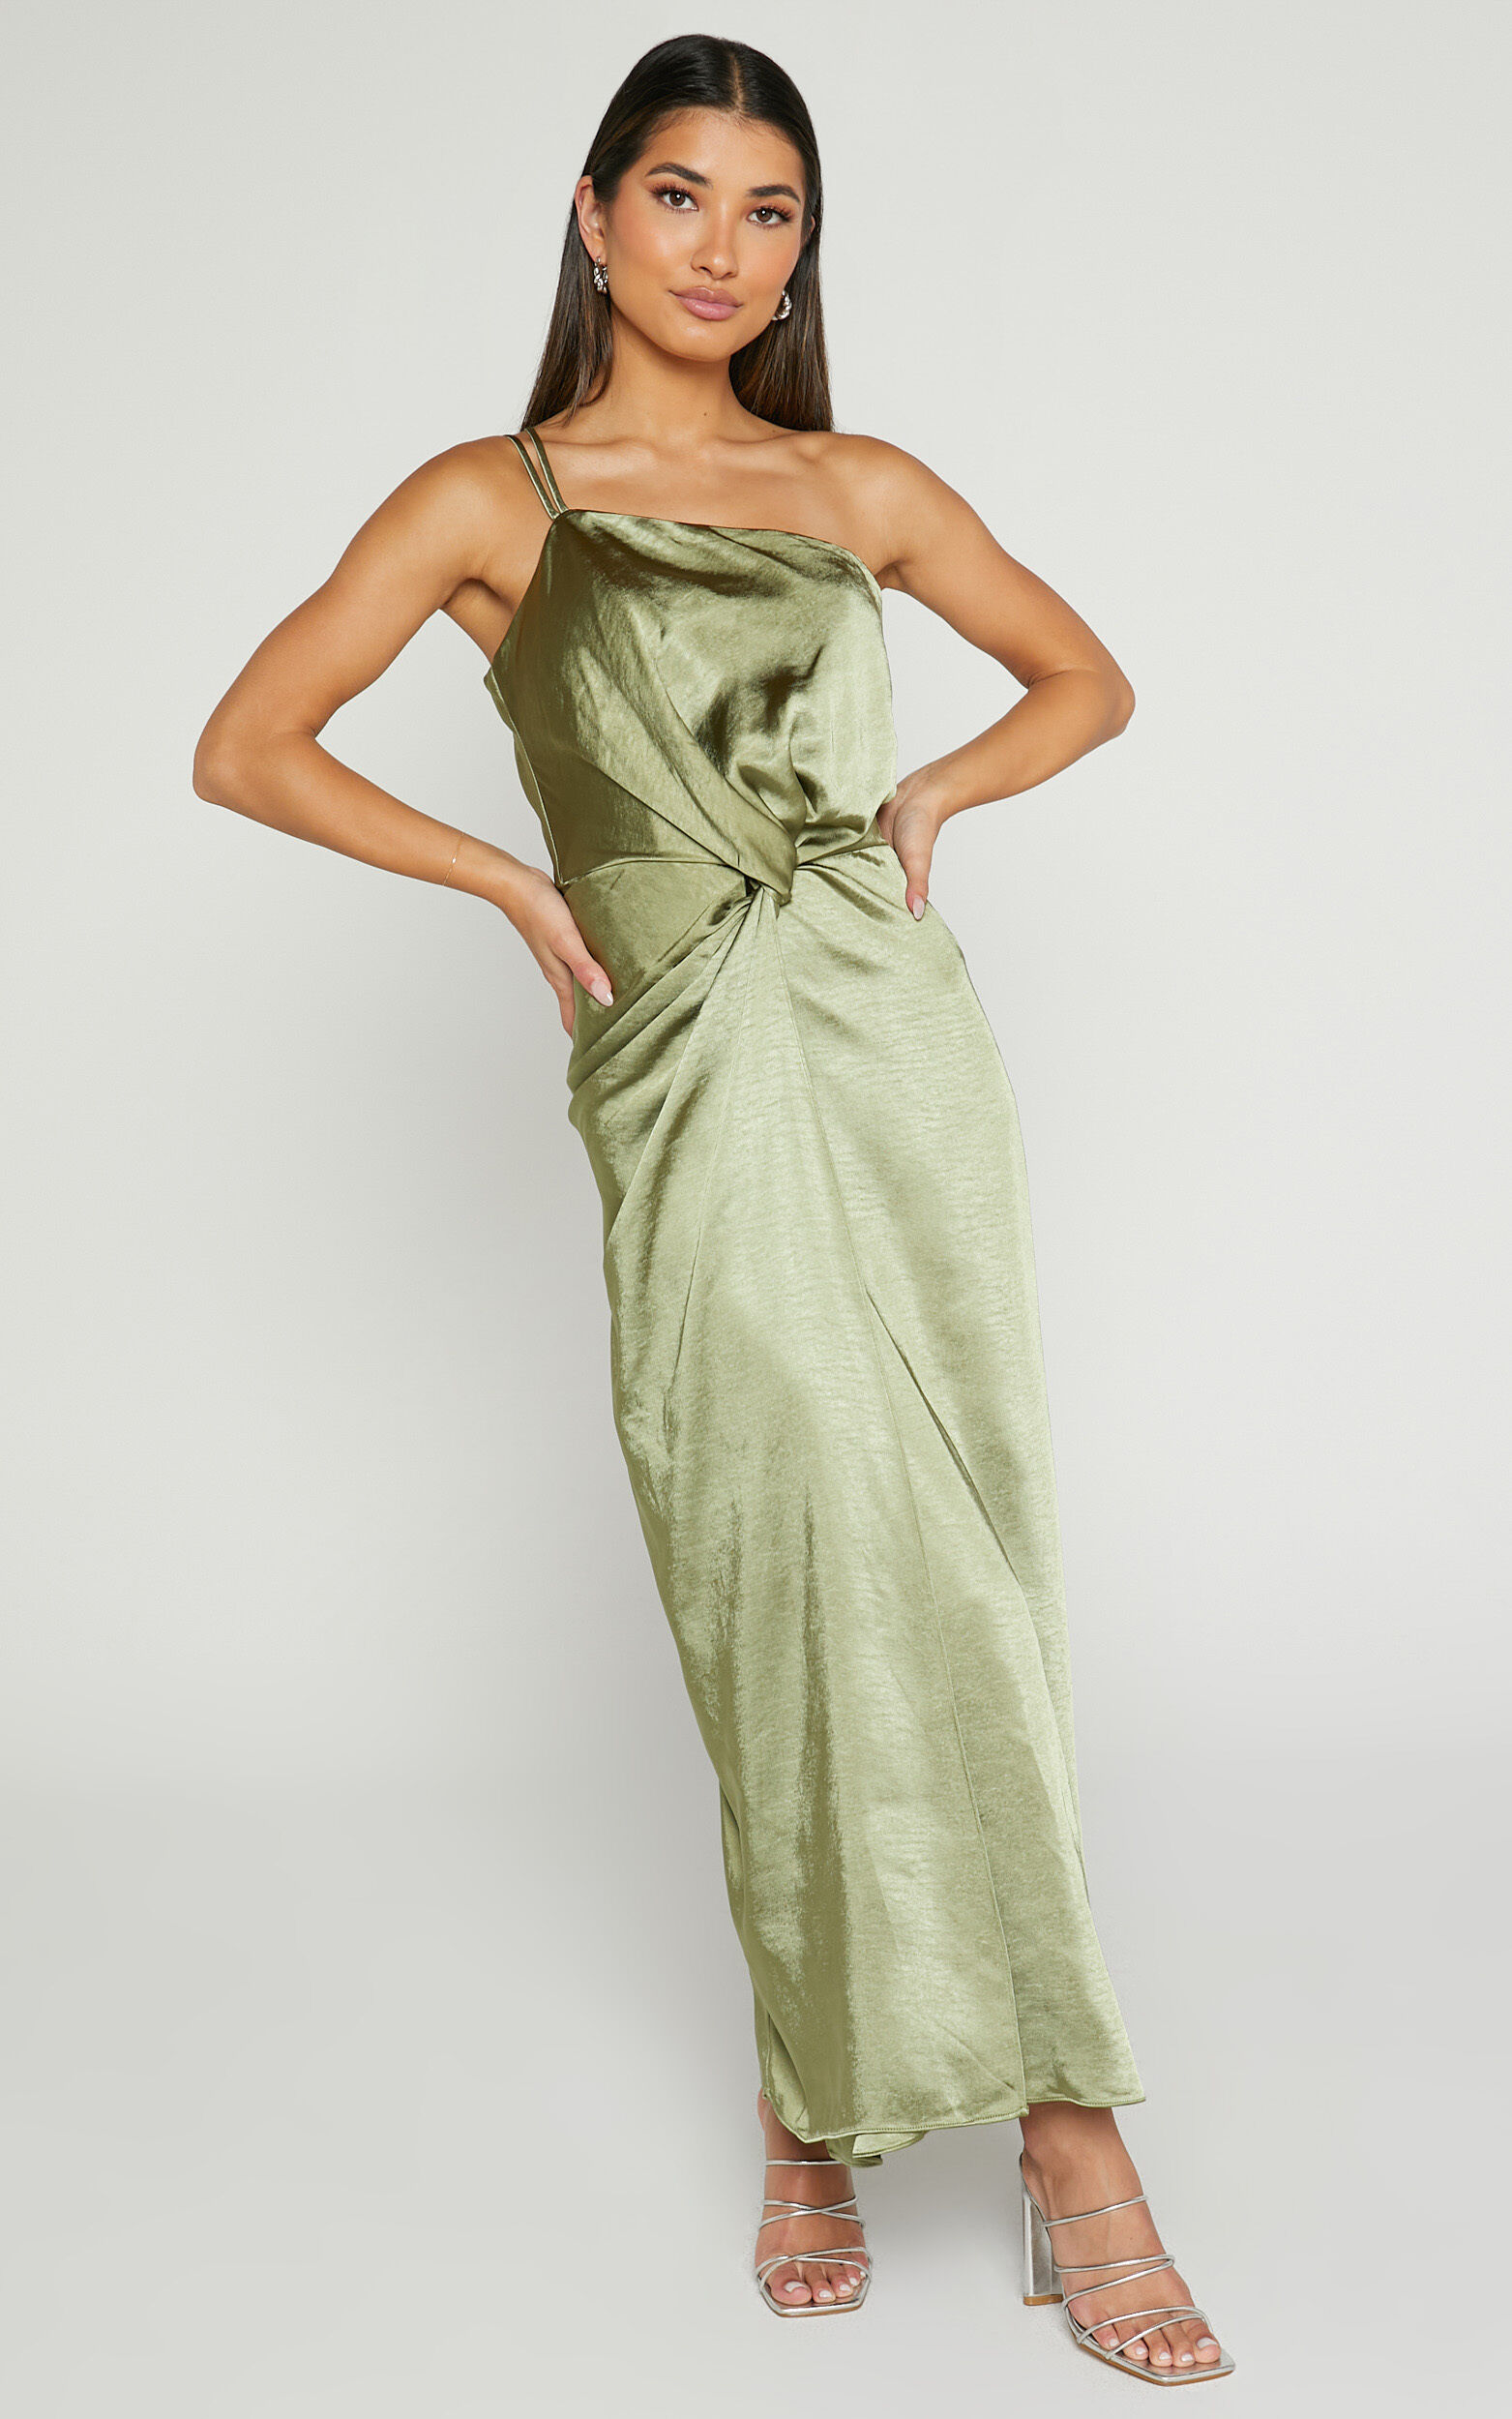 Estelle Midaxi Dress - One Shoulder Thigh Split Dress in Olive - 06, GRN1